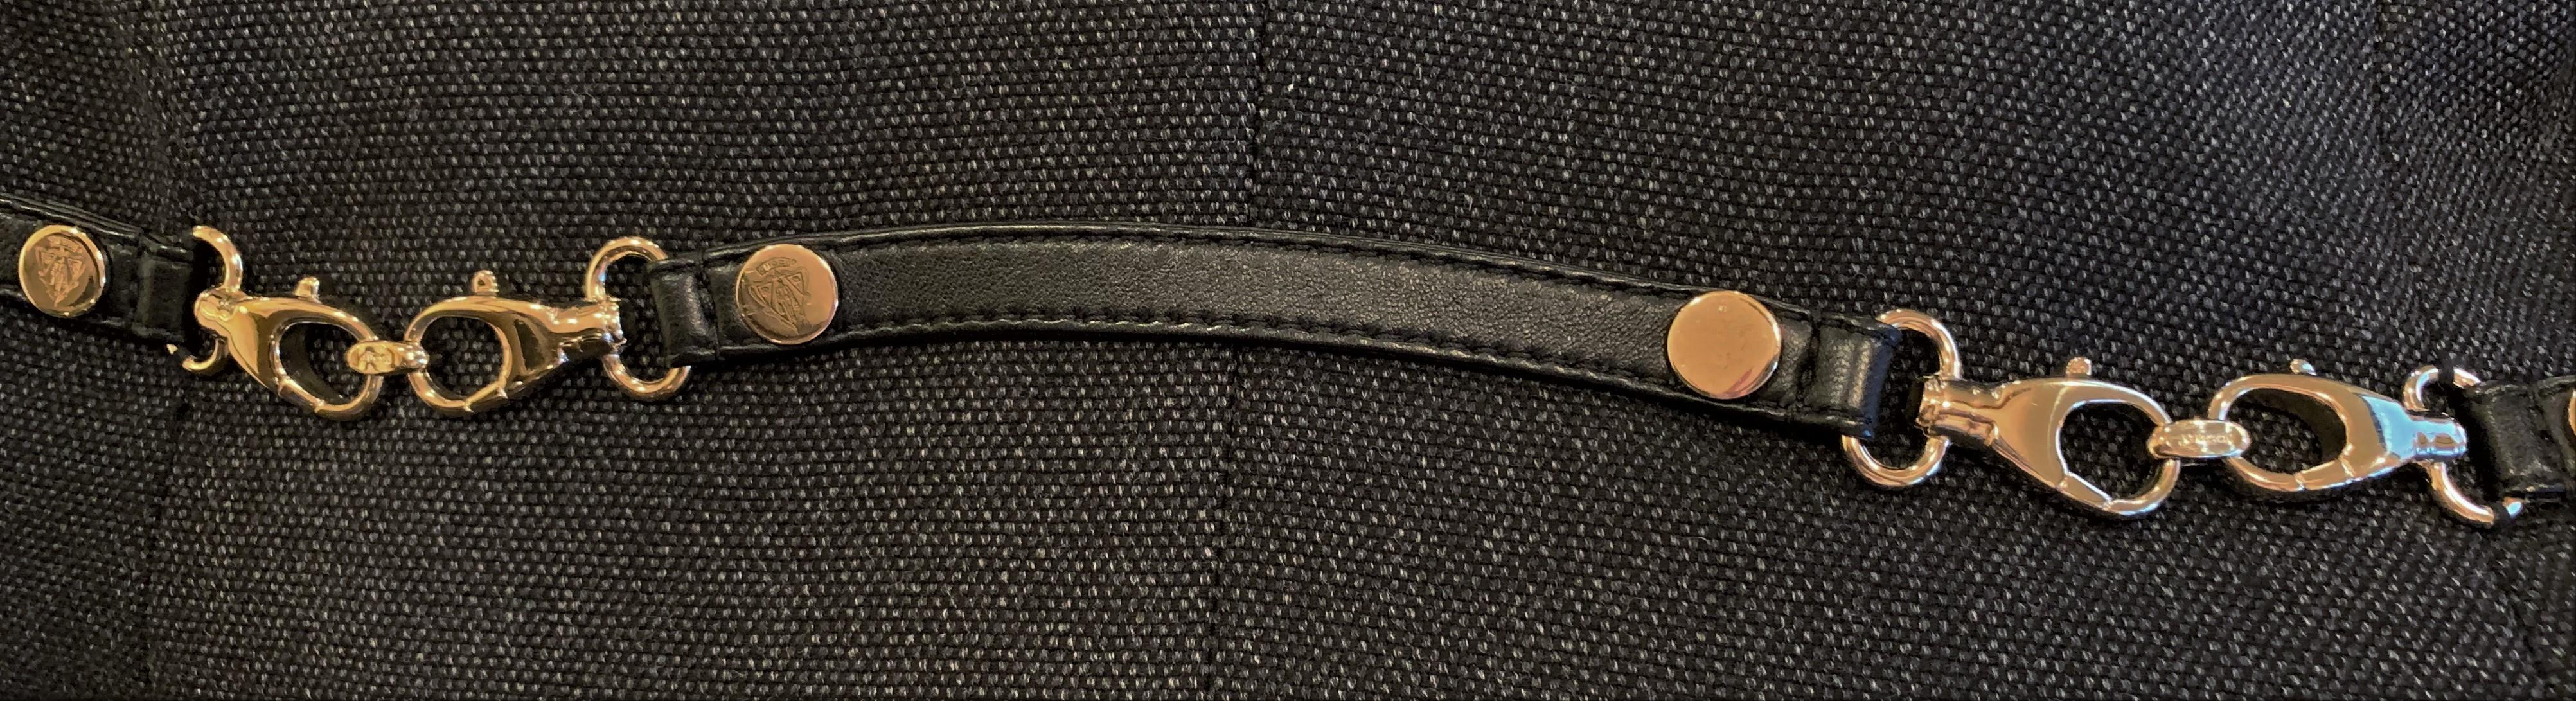 Noir Gucci - Blazer manteau débardeur, défilé A/H 2006, taille 44, état neuf